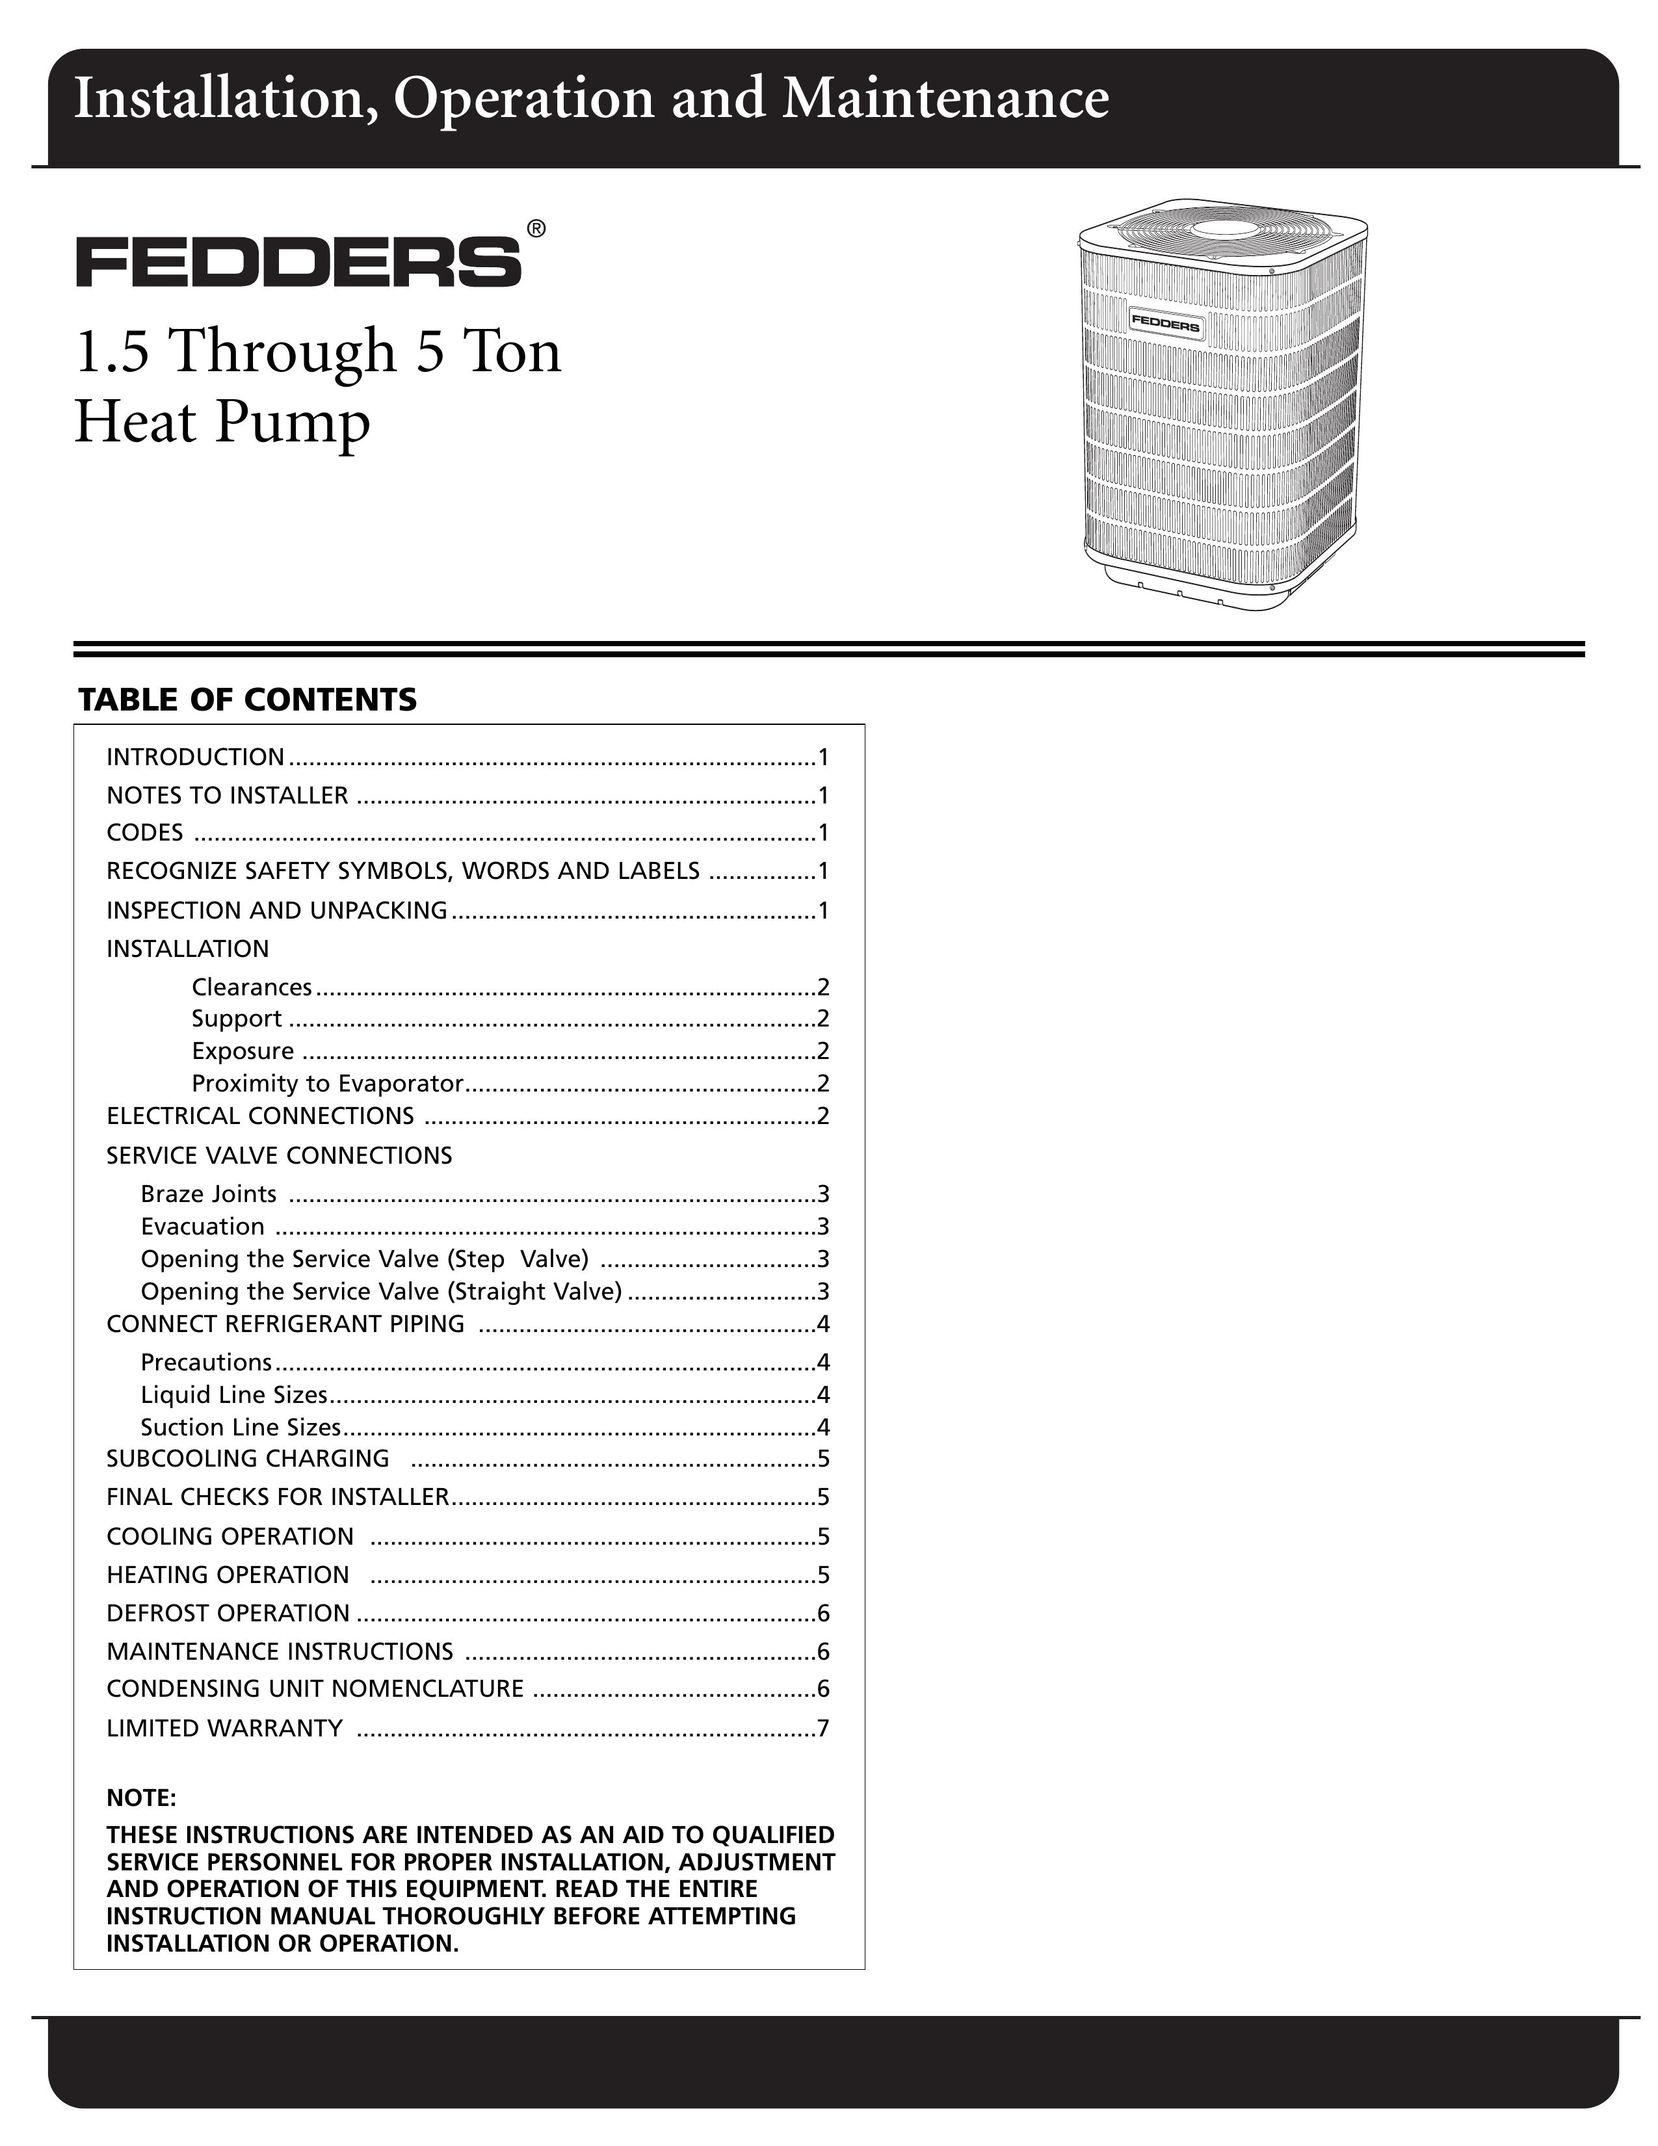 Fedders CH18ABD1 Heat Pump User Manual